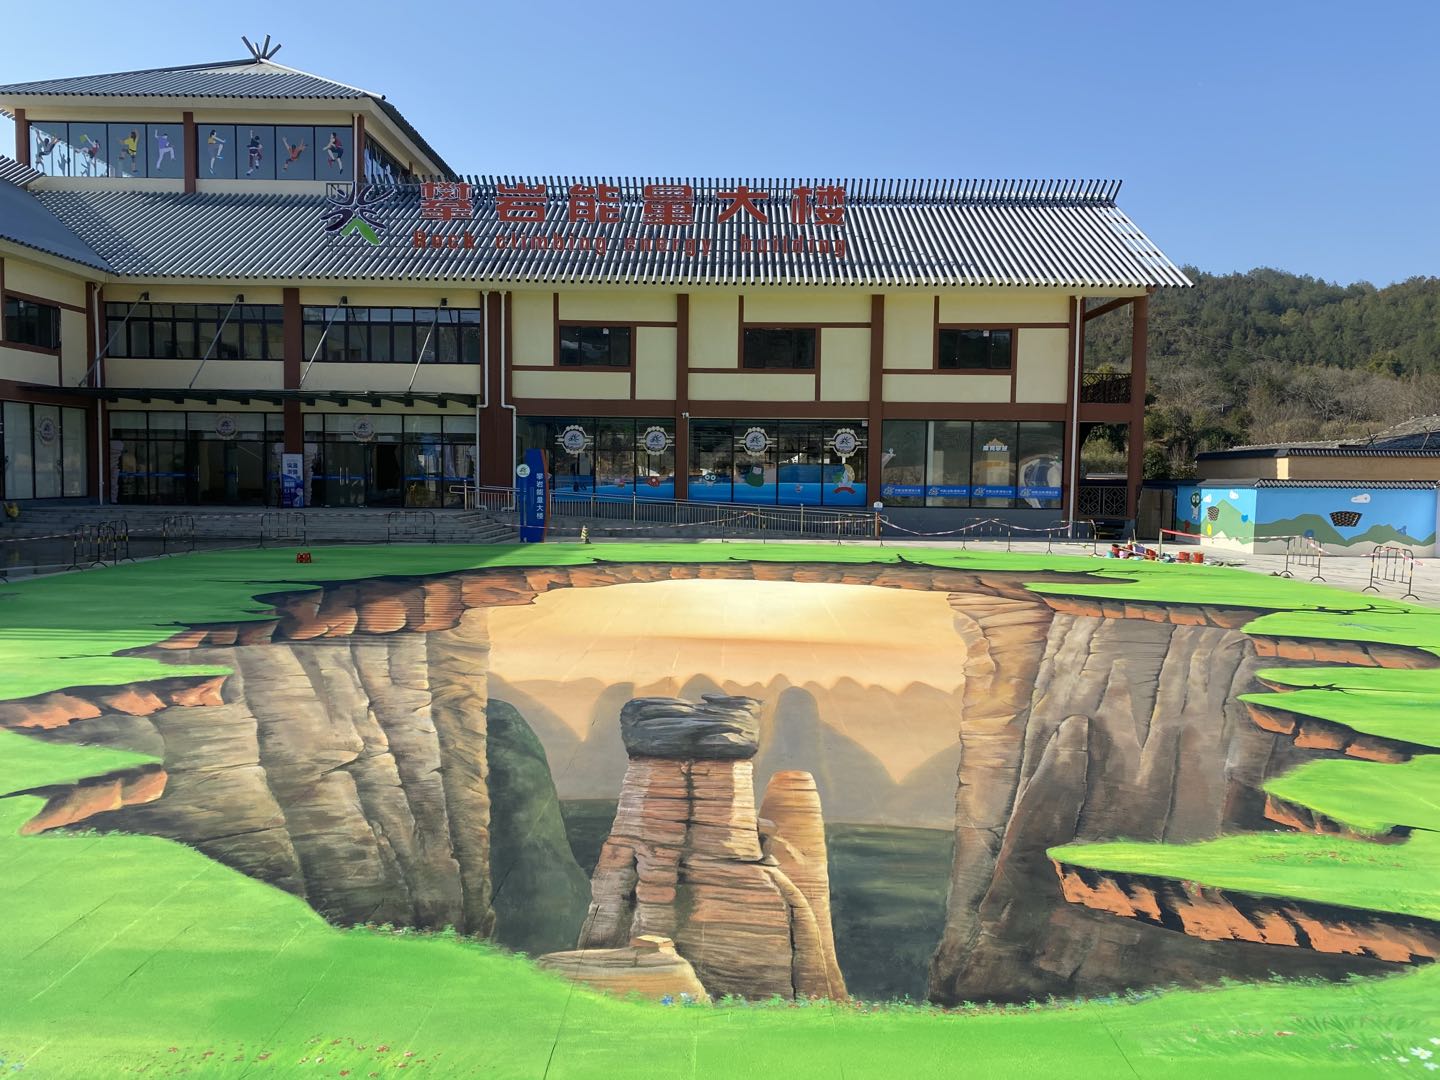 SP彩色路面产品打造最美赣州攀岩小镇3D彩绘路面